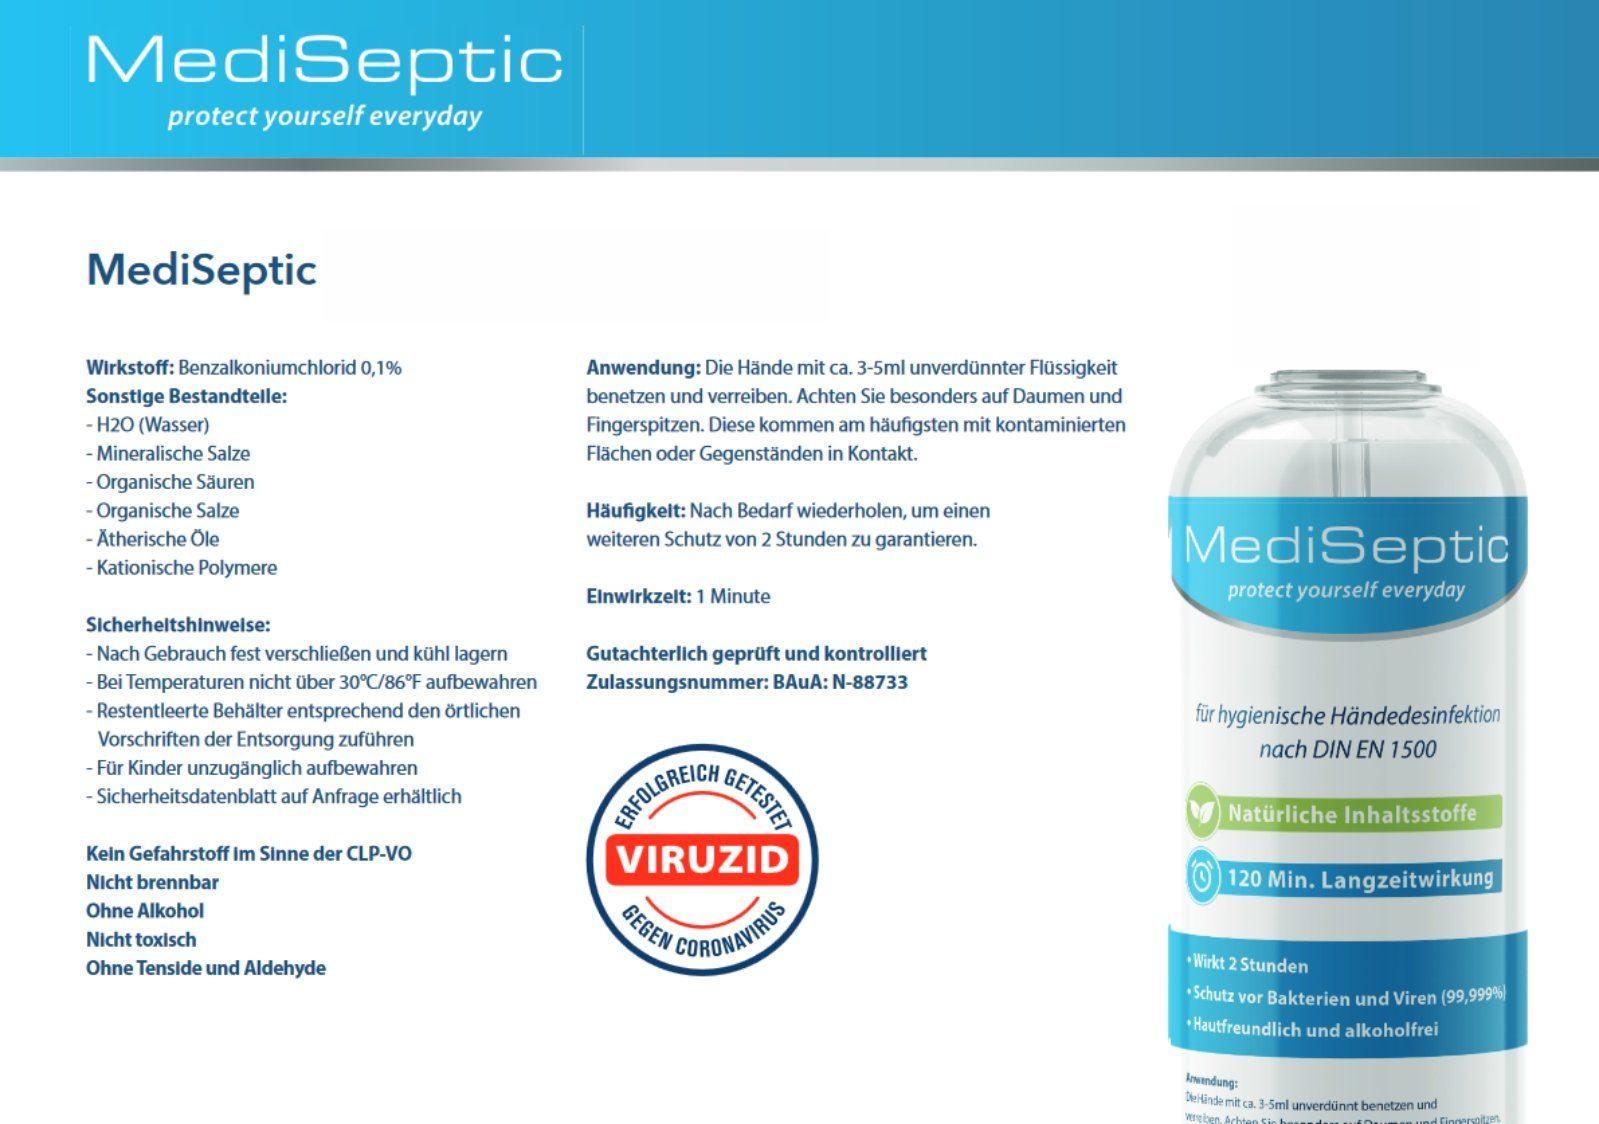 MediSeptic 500 Antiinfektionsmittel Hand zusätzlich Schutz, Anti-Infektion Desinfektion Hände Desinfektion 99,9% 2 ml MediSeptic h zur Hautcreme